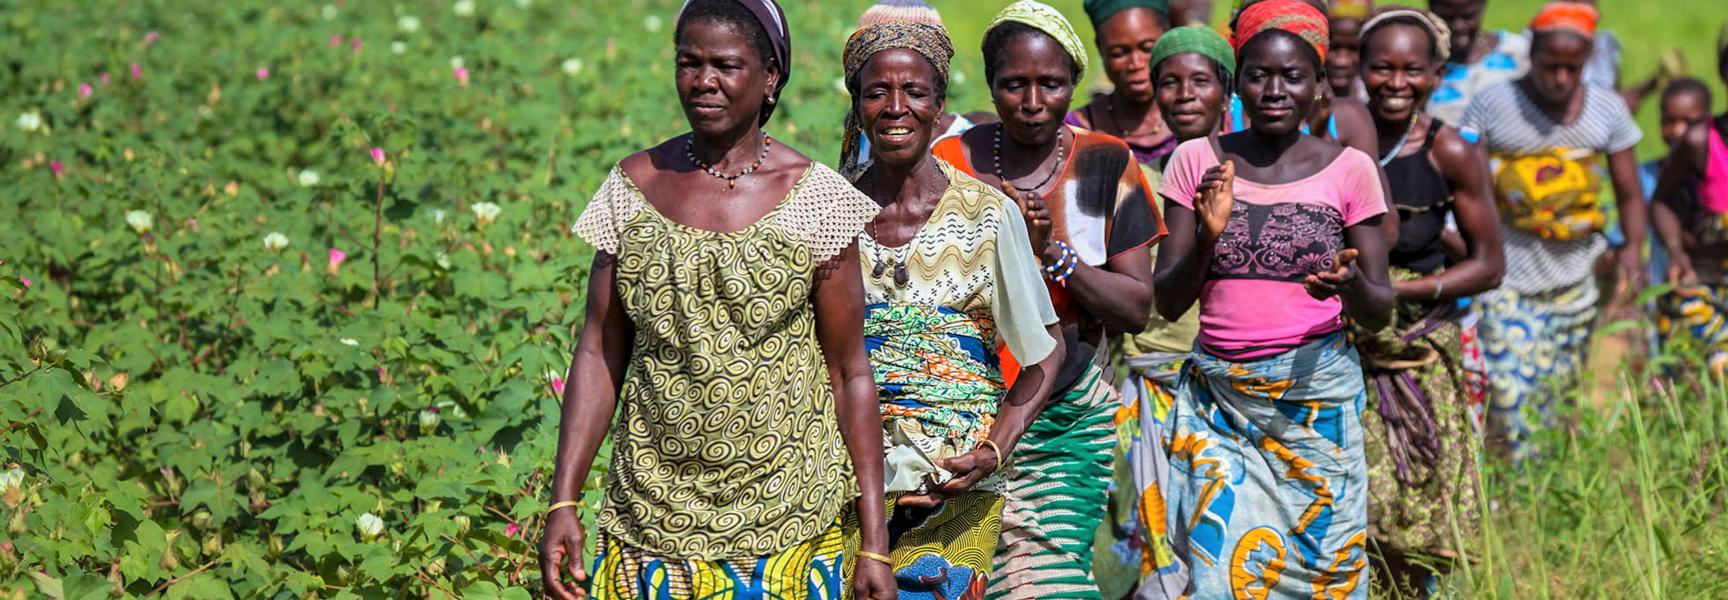 Women farmers walking in Benin